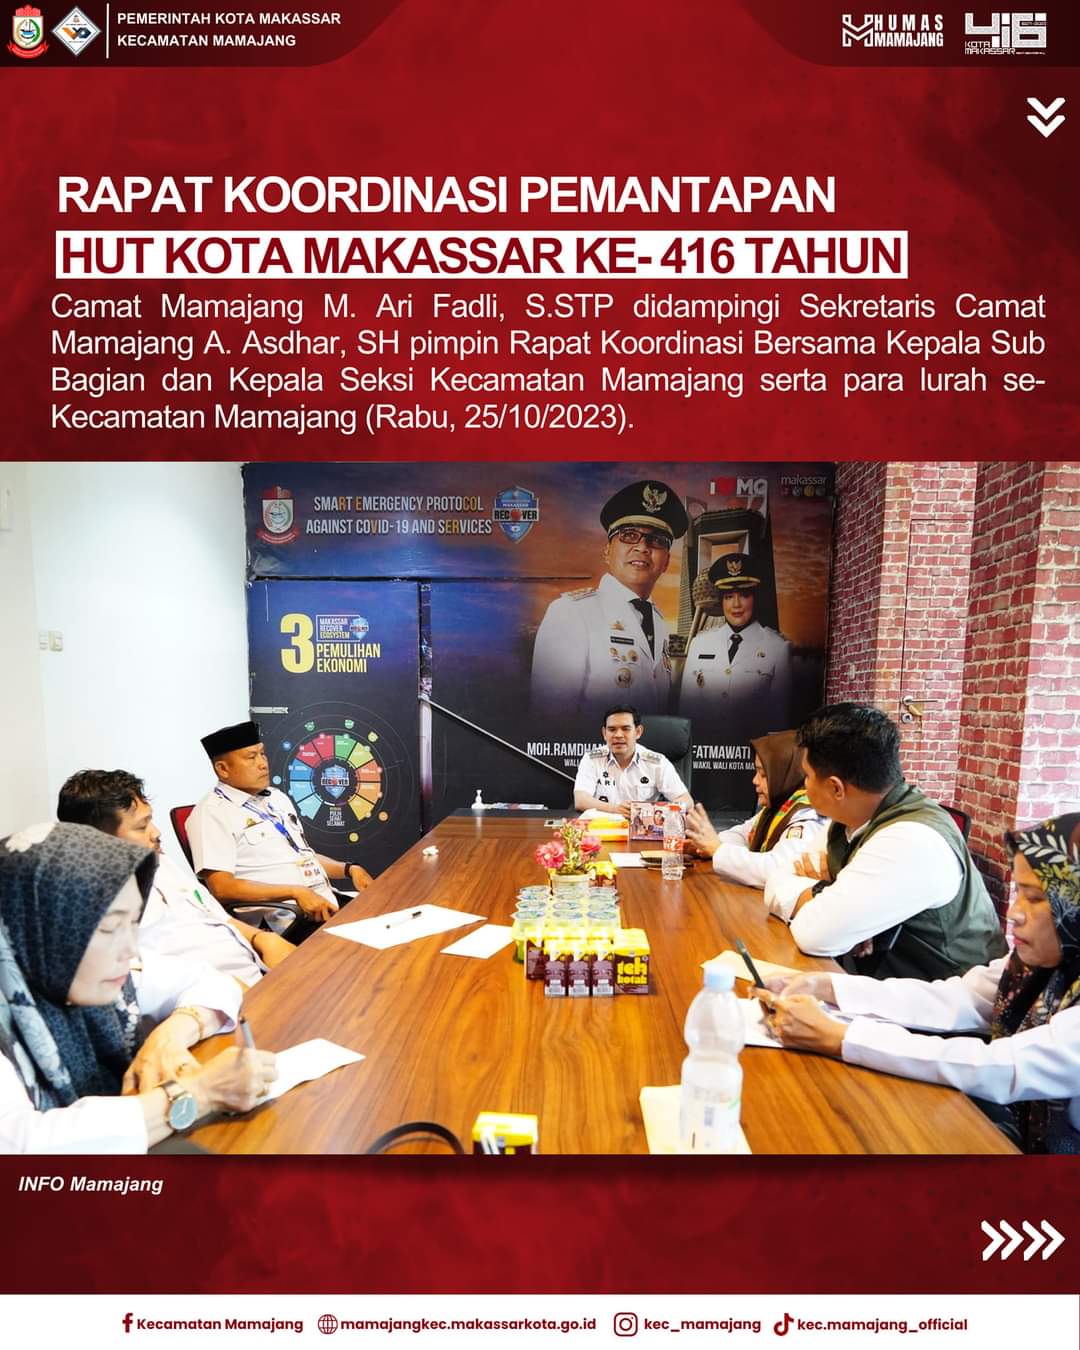 Gambar Camat Mamajang M. Ari Fadli S.STP Pimpin Rapat Koordinasi Pemantapan Persiapan Pelaksanaan HUT kota Makassar KE-416